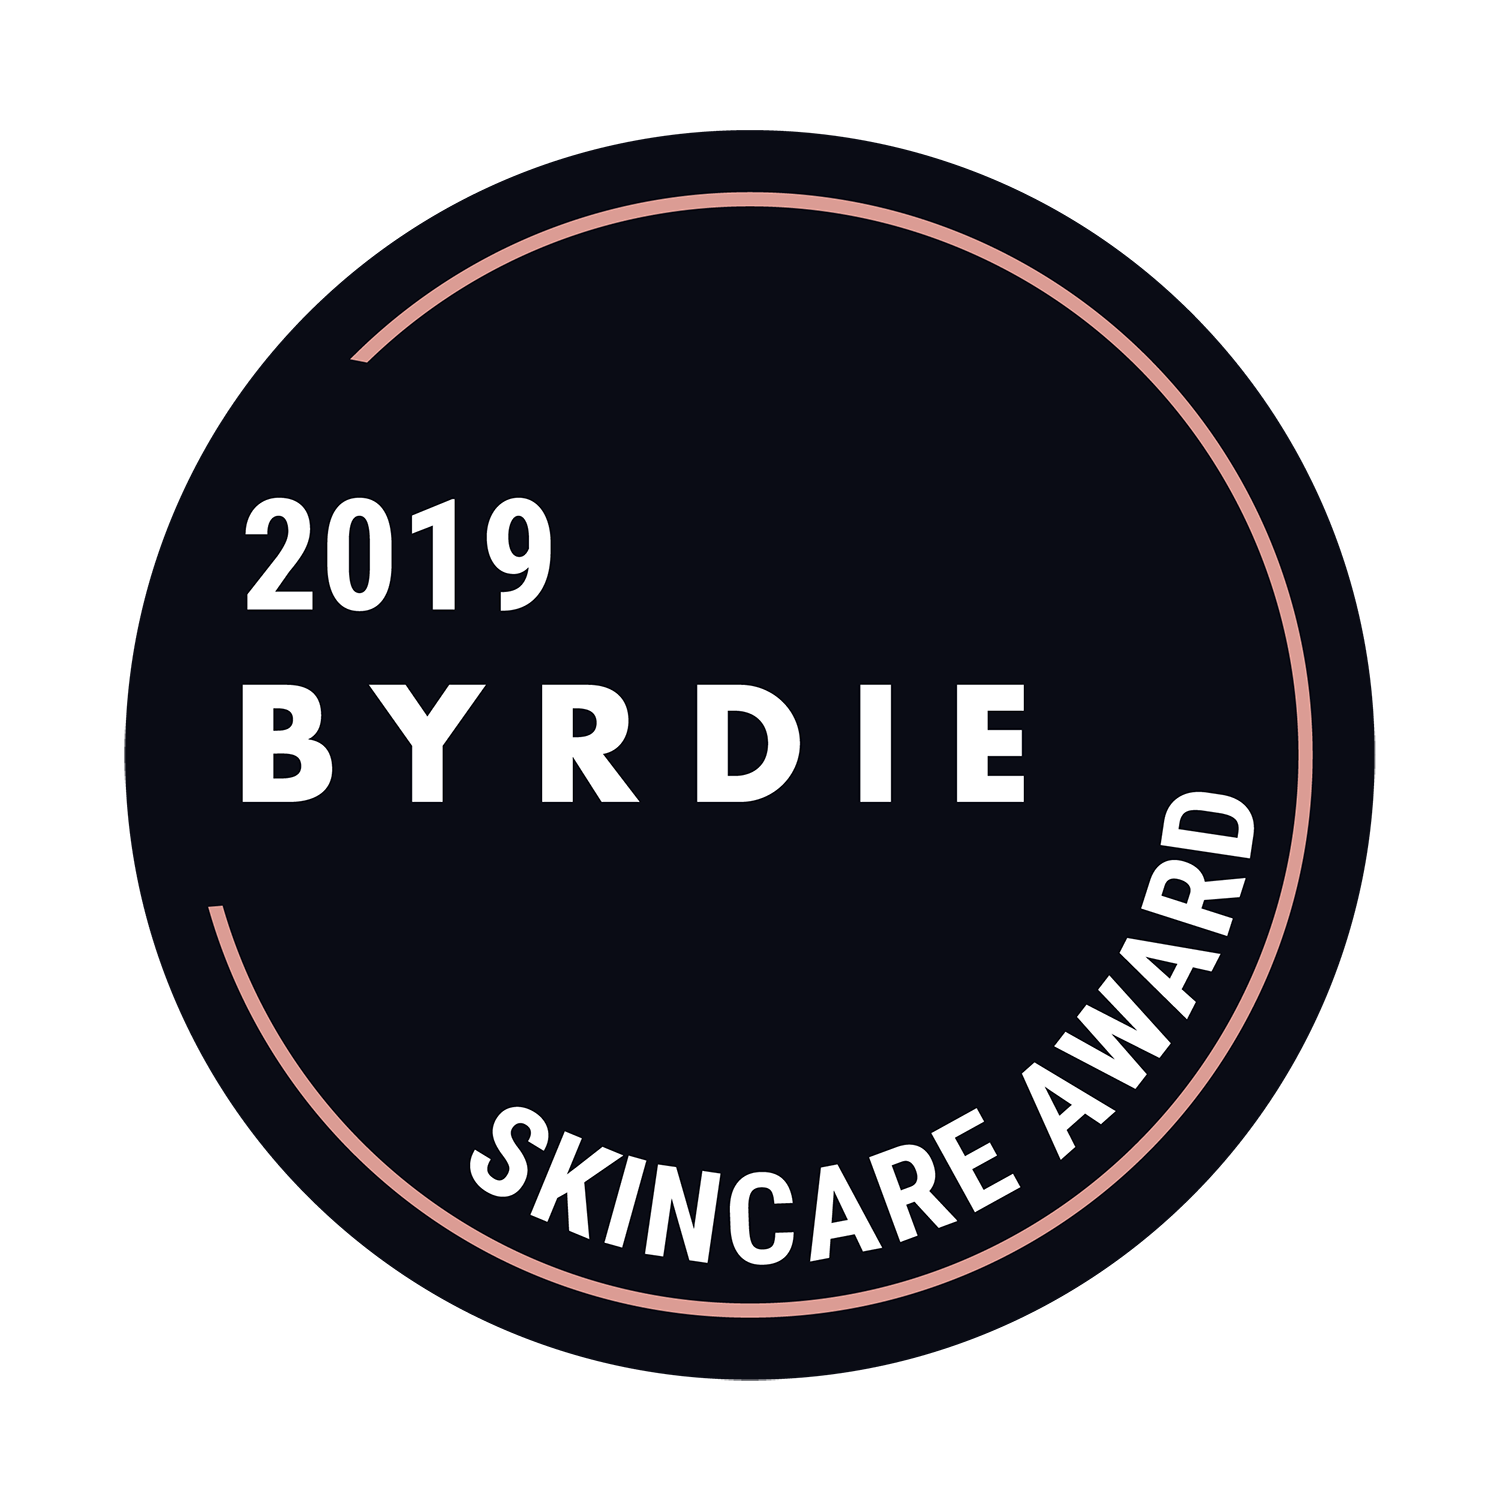 2019 Byrdie Skincare Award